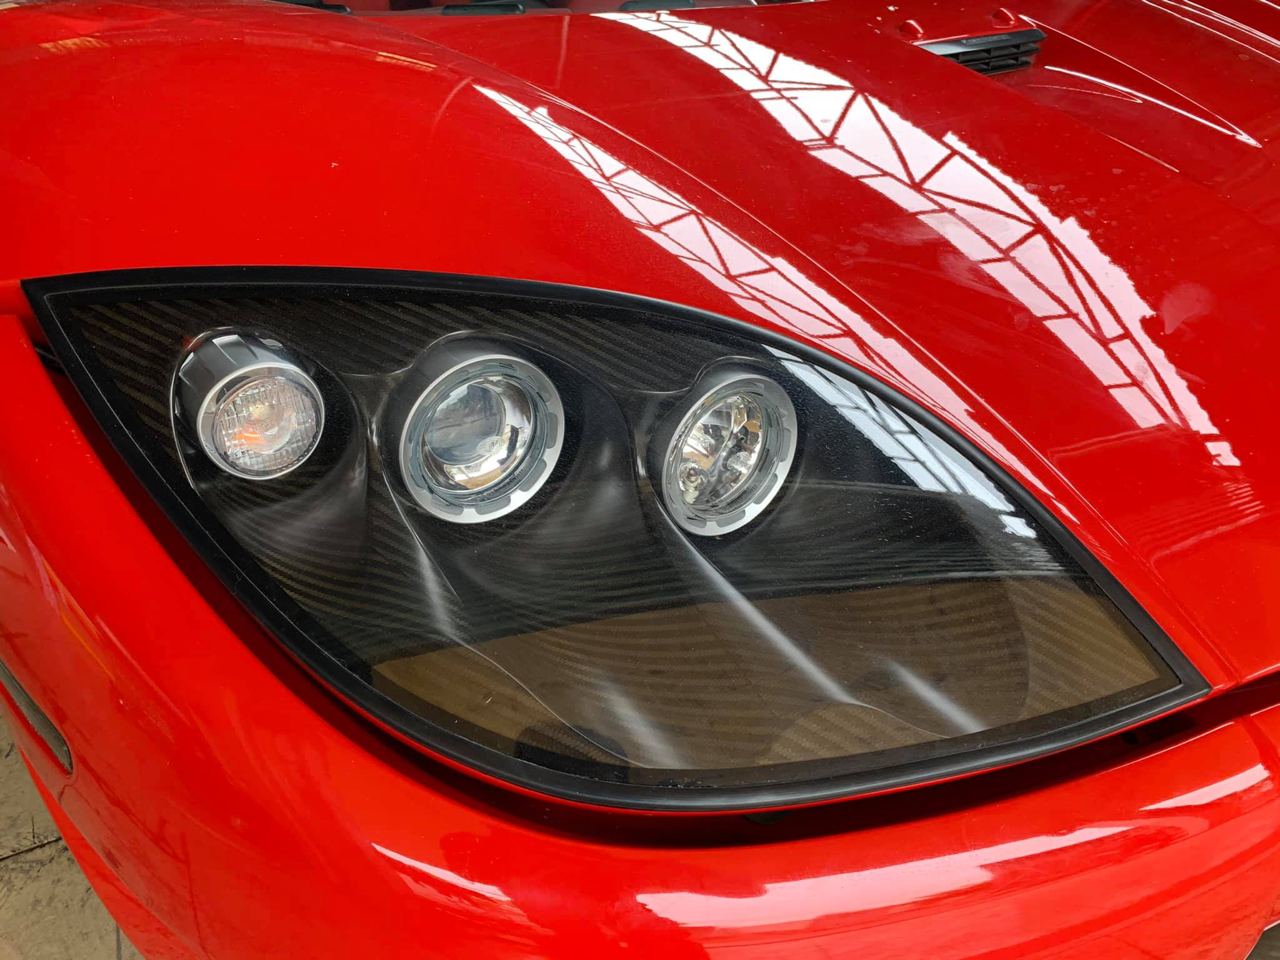 Lộ ảnh Koenigsegg CCX được cho là đã về Việt Nam, chung nguồn gốc với Pagani Huayra của Minh nhựa và McLaren Senna của Hoàng Kim Khánh - Ảnh 5.